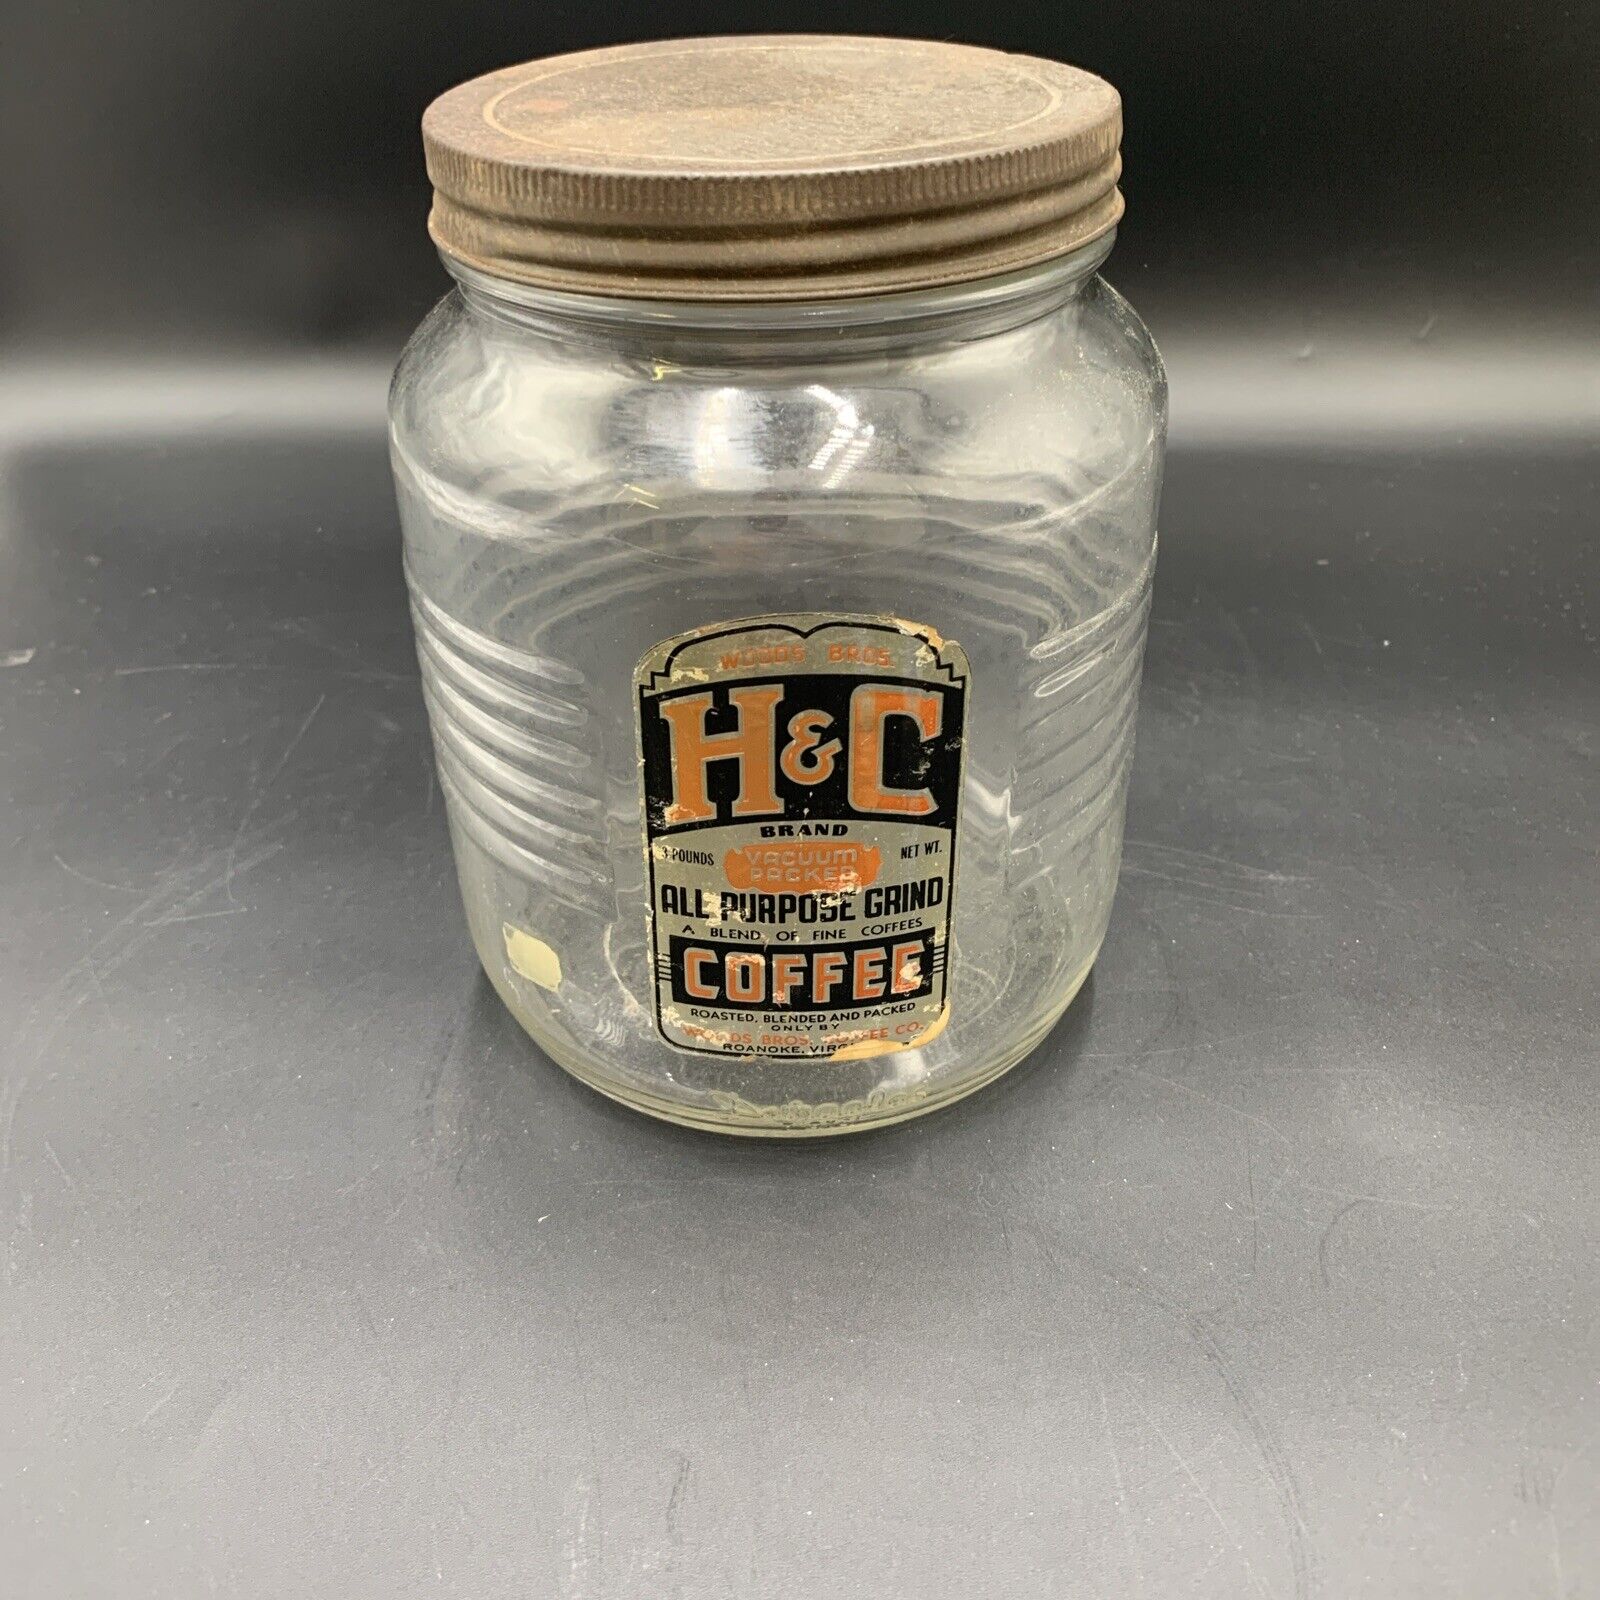 Vintage H & C Coffee Jar Roanoke VA Woods Bros Coffee Co.  3lb Duraglass Jar Lid